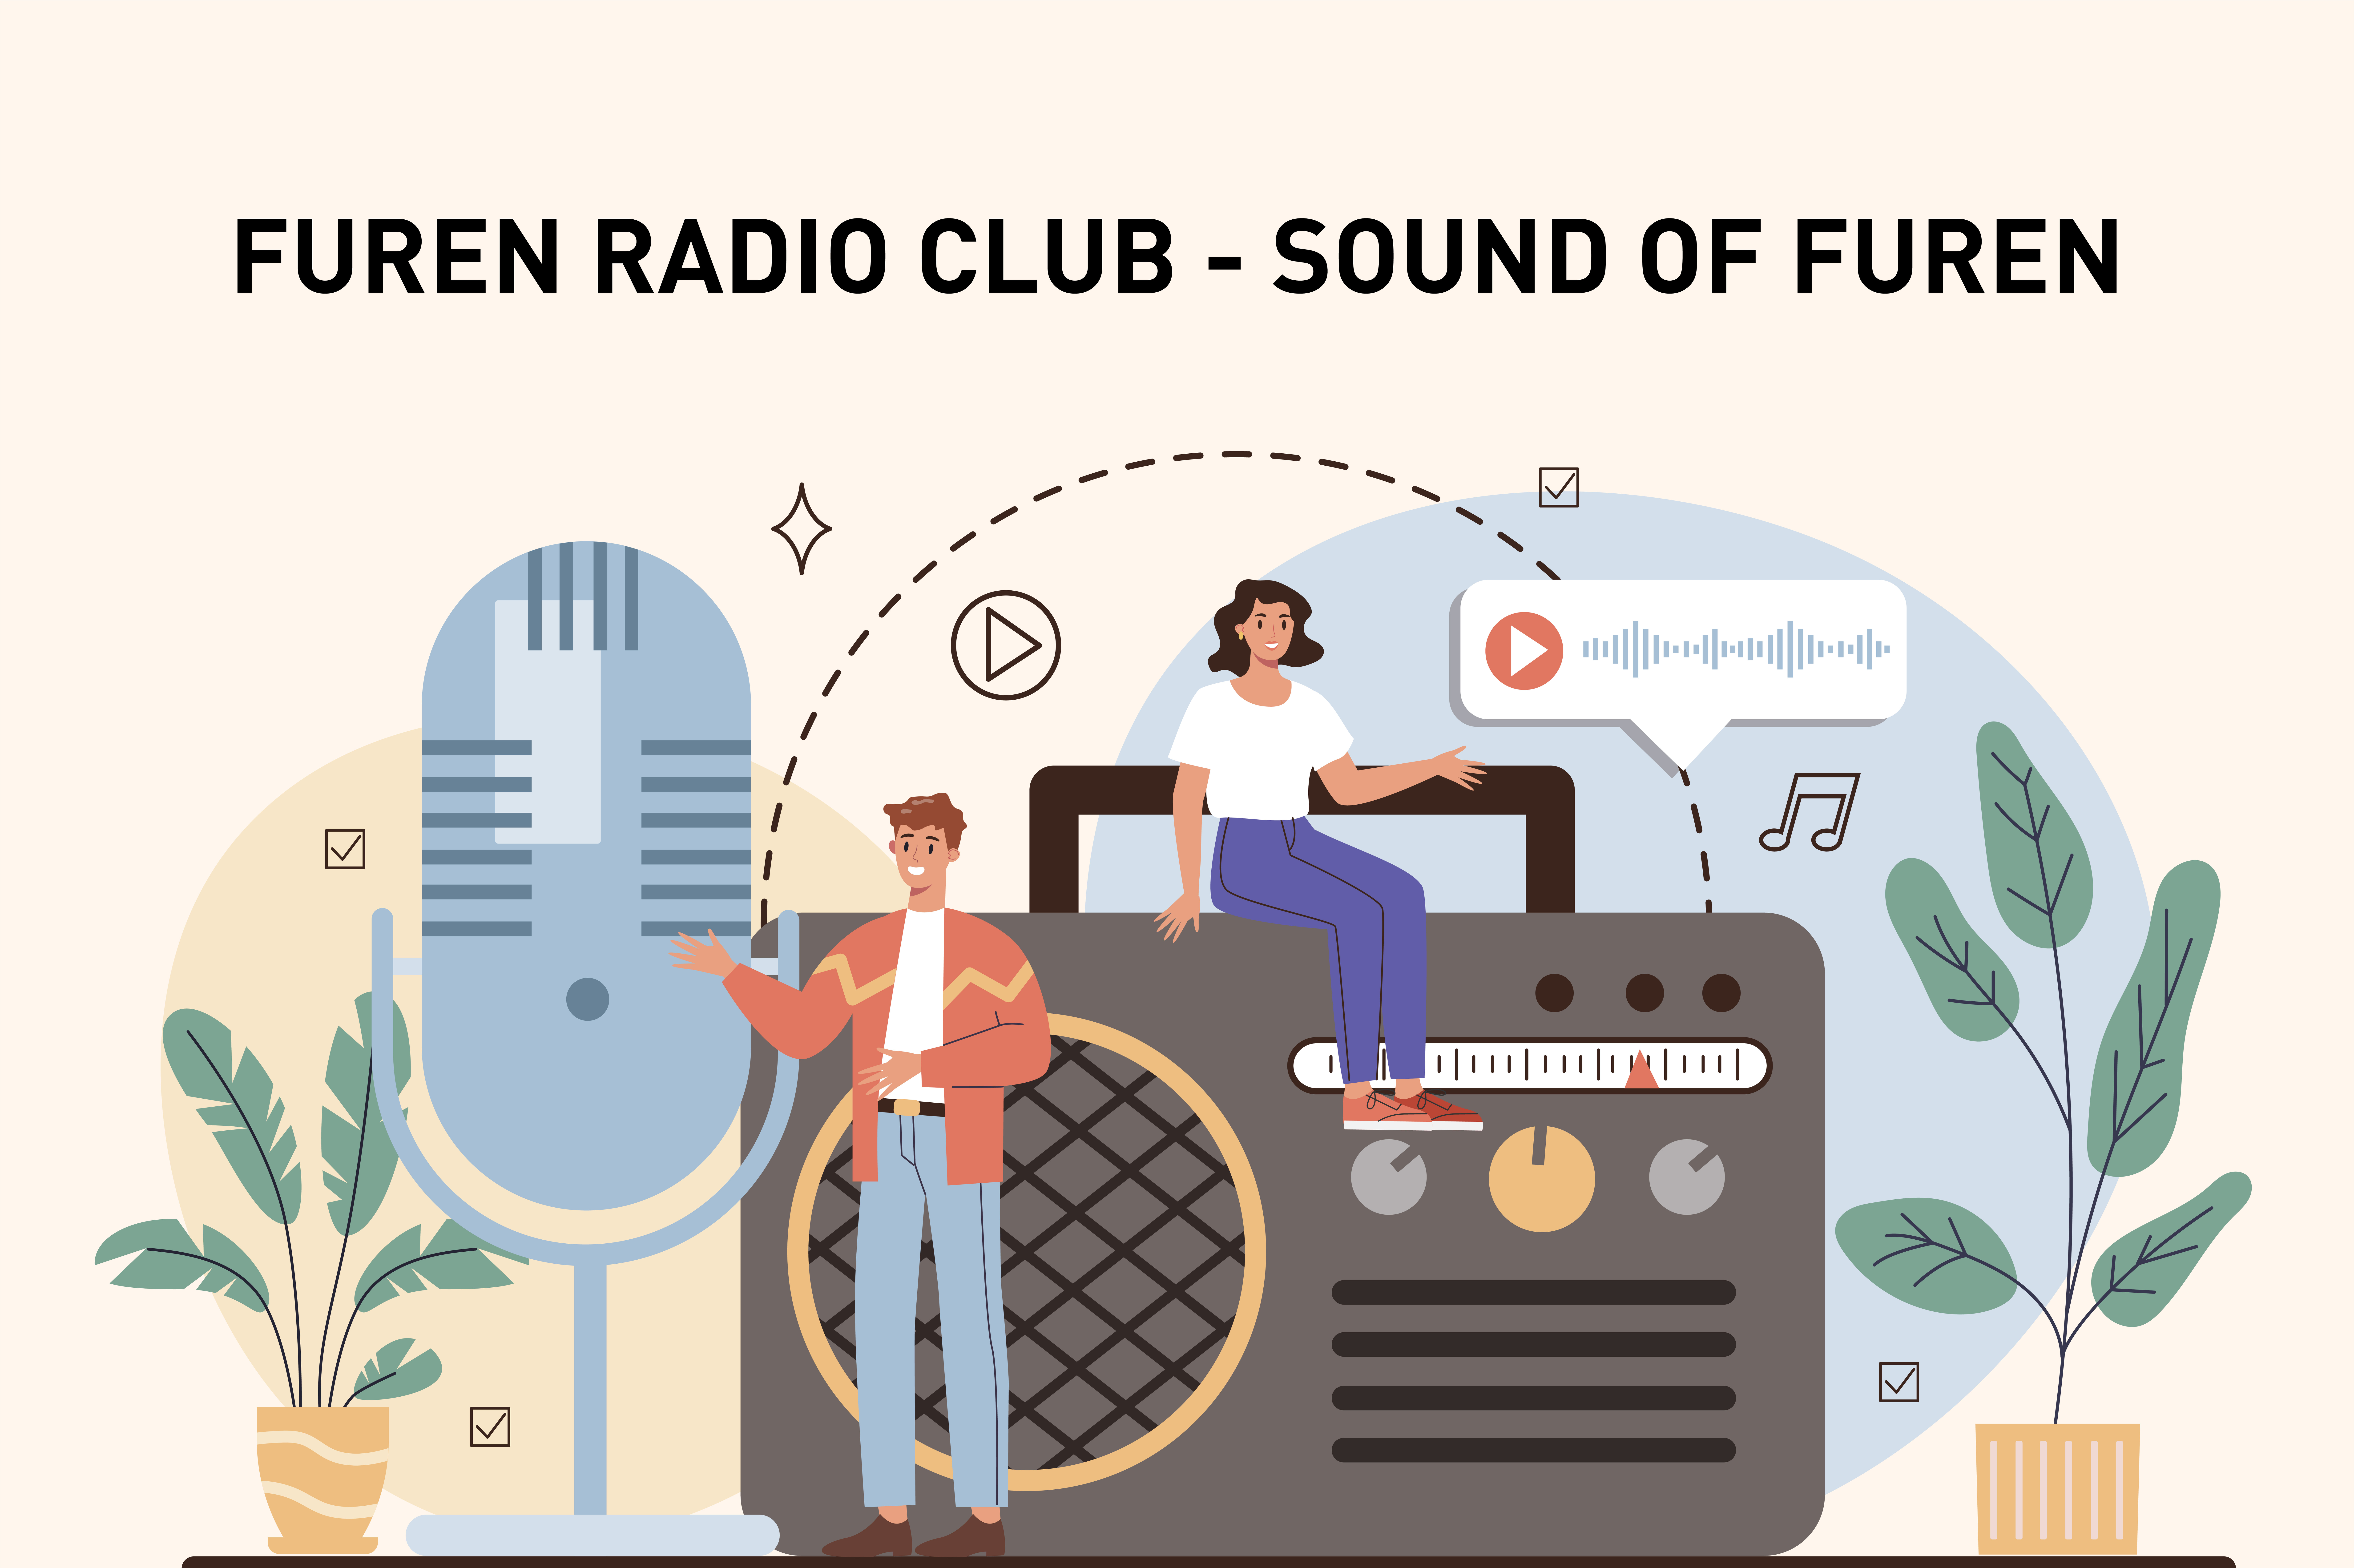 Live broadcast from Furen Radio Club – Sound of Furen is back 📻